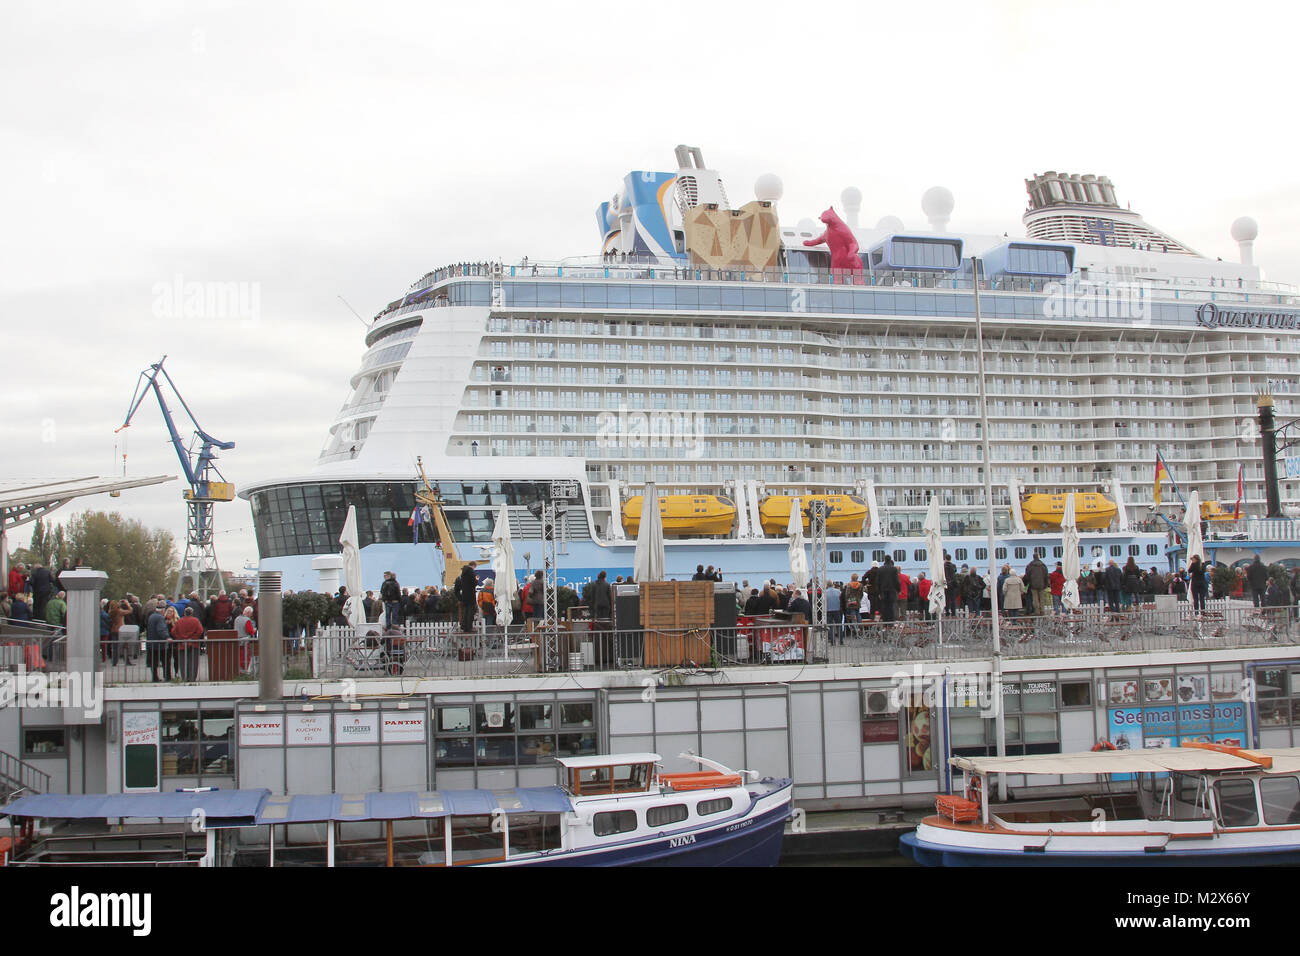 Das Kreuzfahrtschiff 'Quantum di mari' auf dem Weg zur Wartung ins Dock, Hafen Hamburg, 23.10.2014 Foto Stock